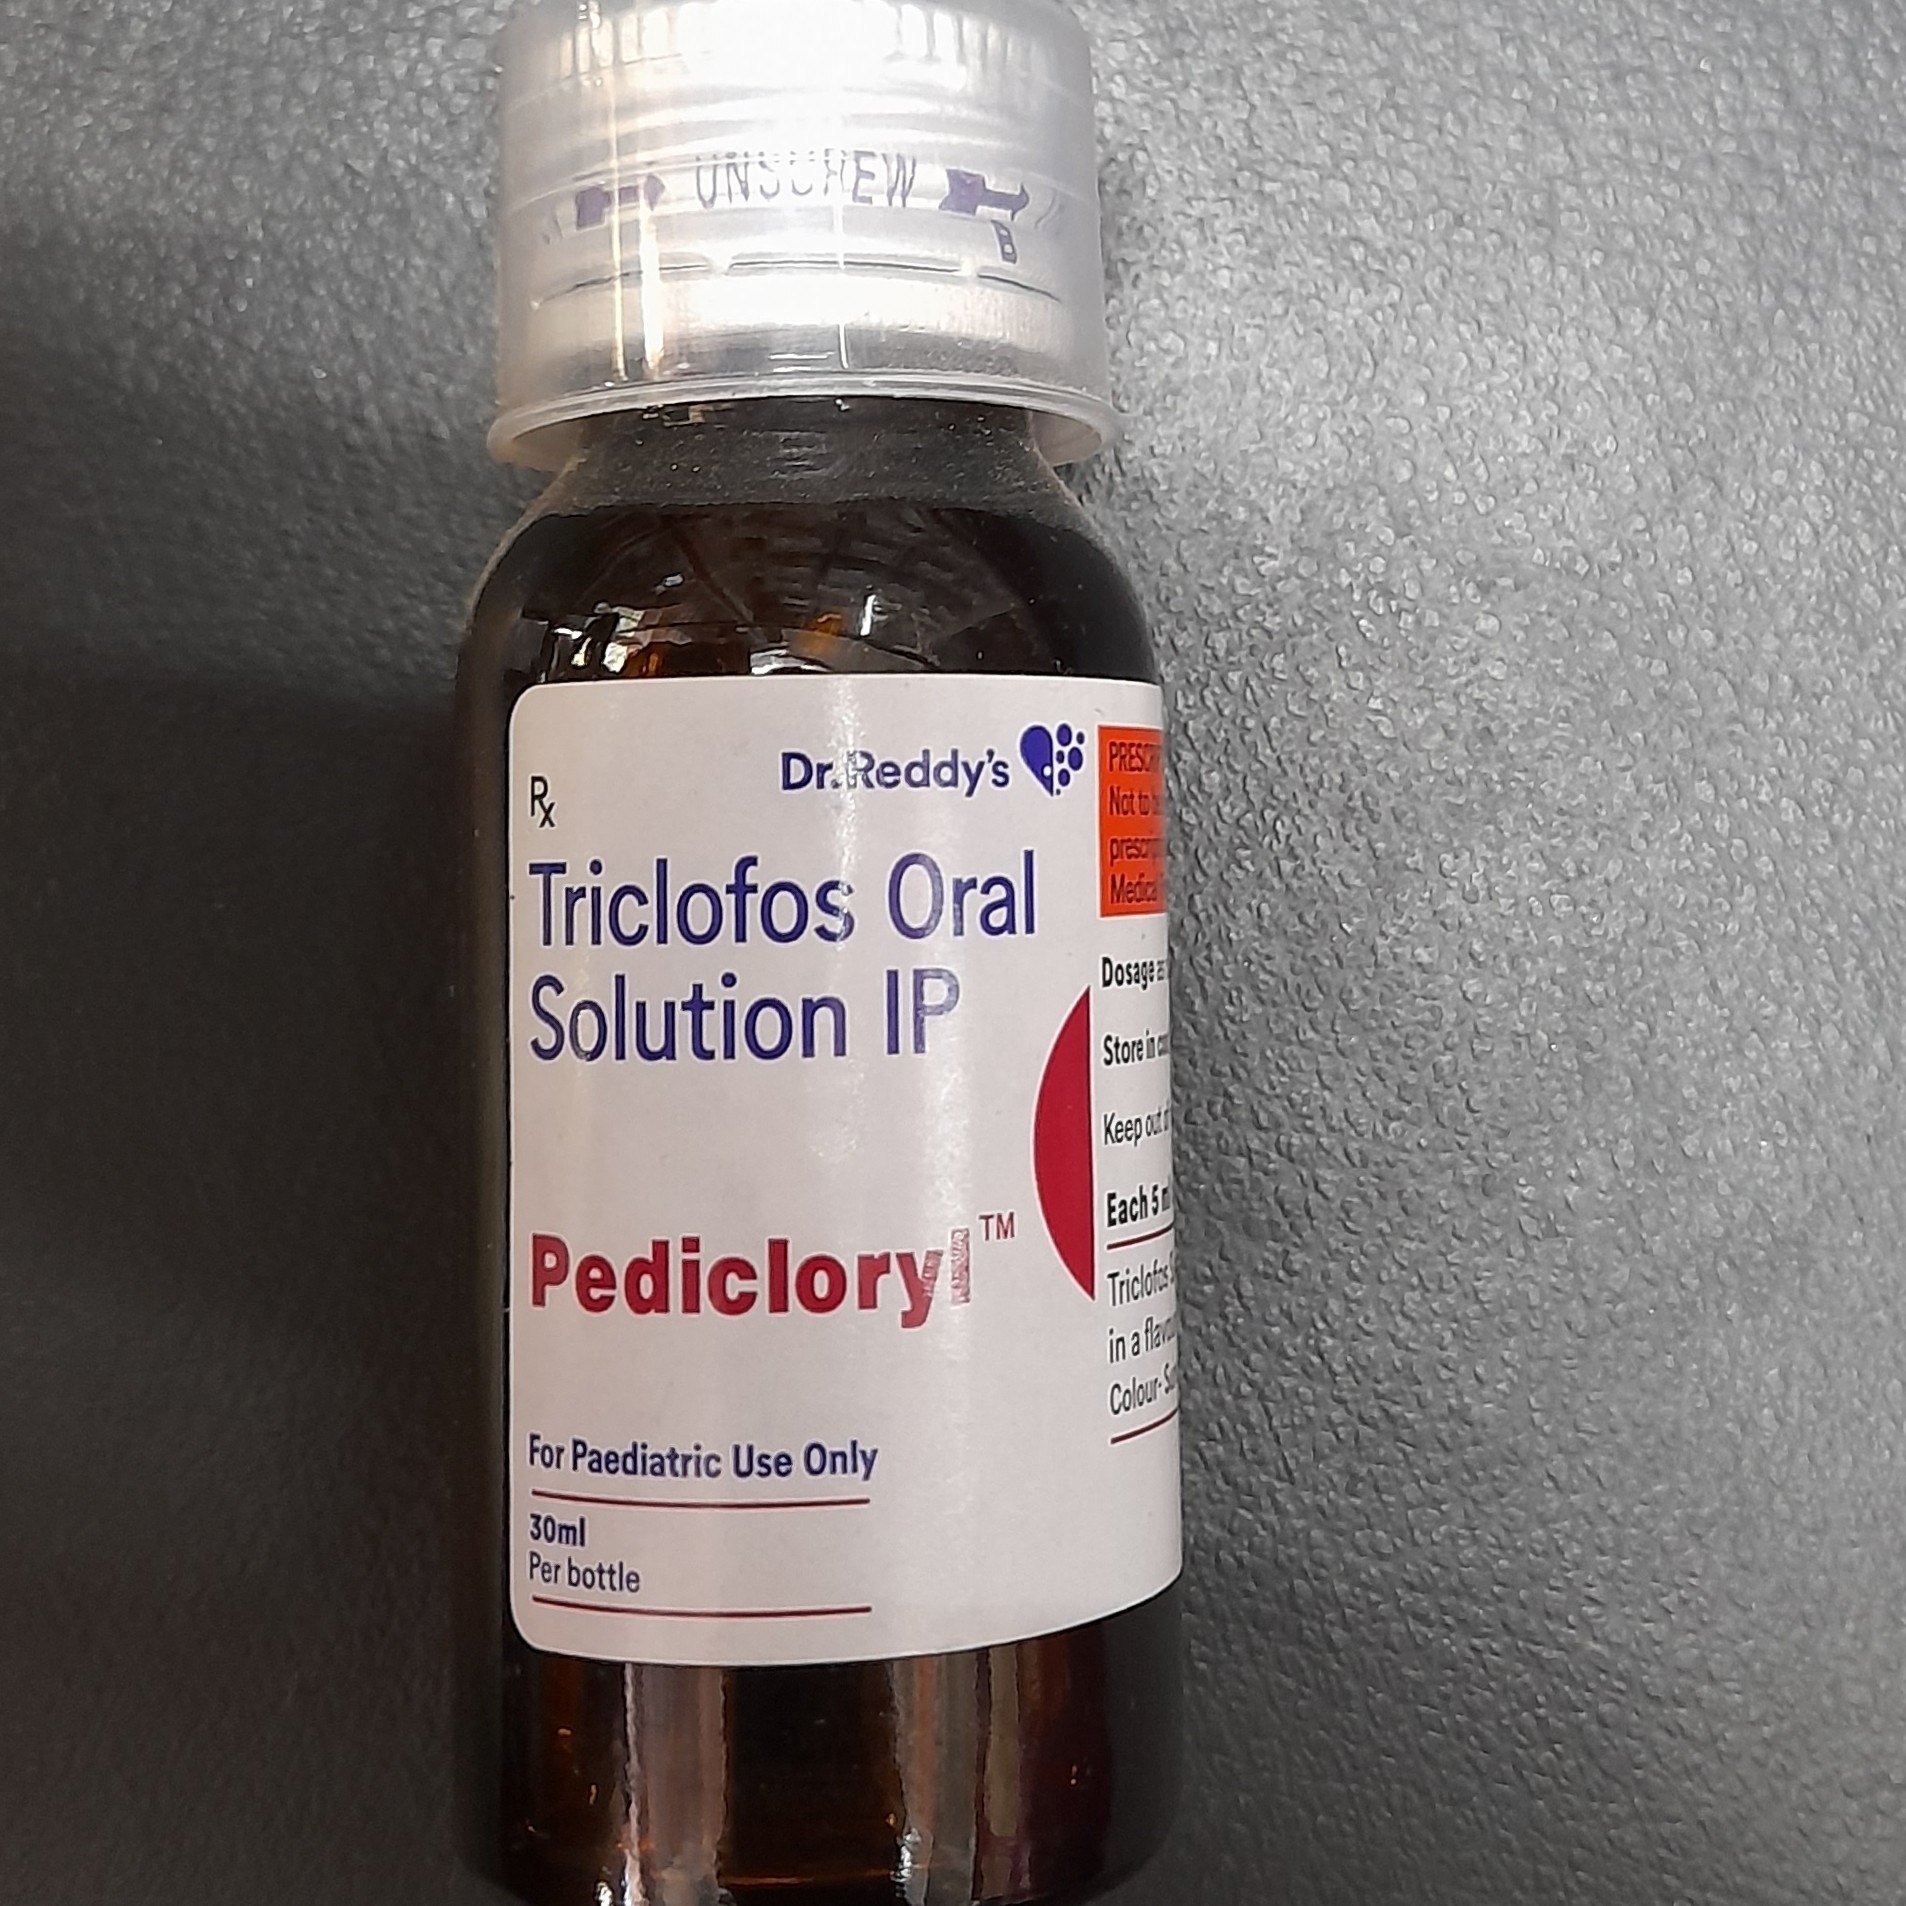 Triclofos oral solution